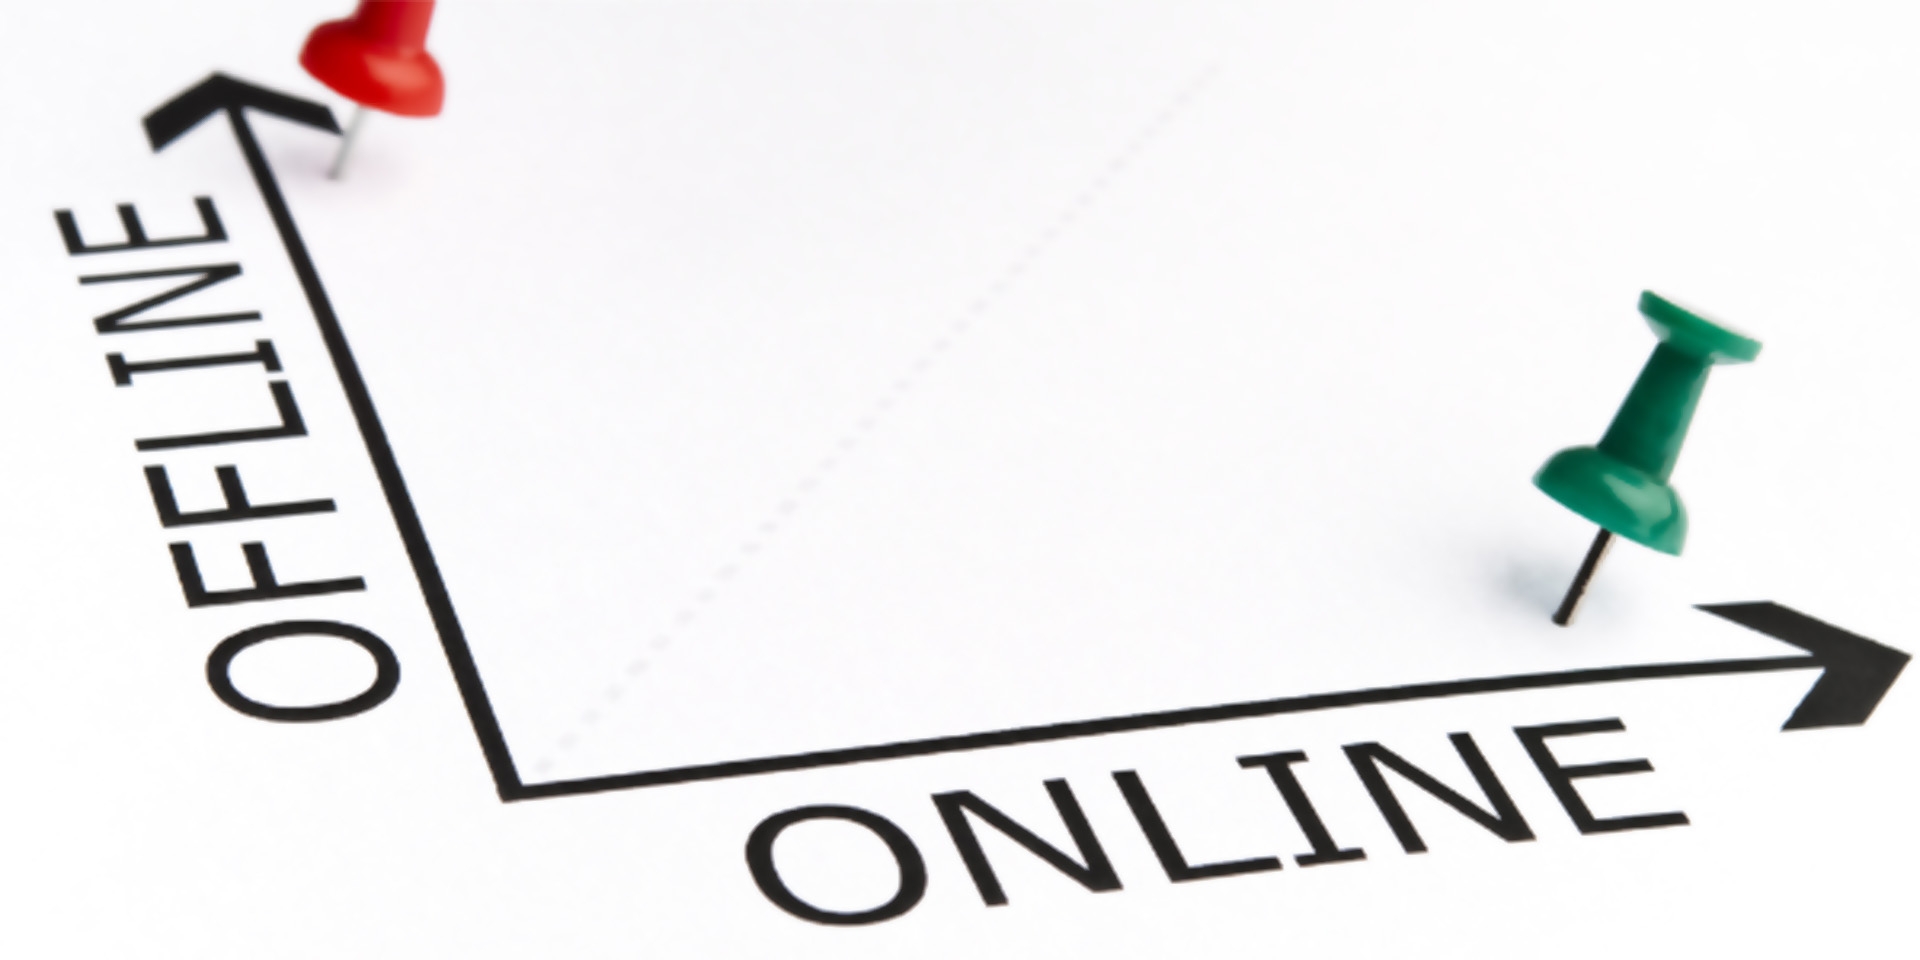 Kinh doanh online – offline và những khó khăn cần giải quyết